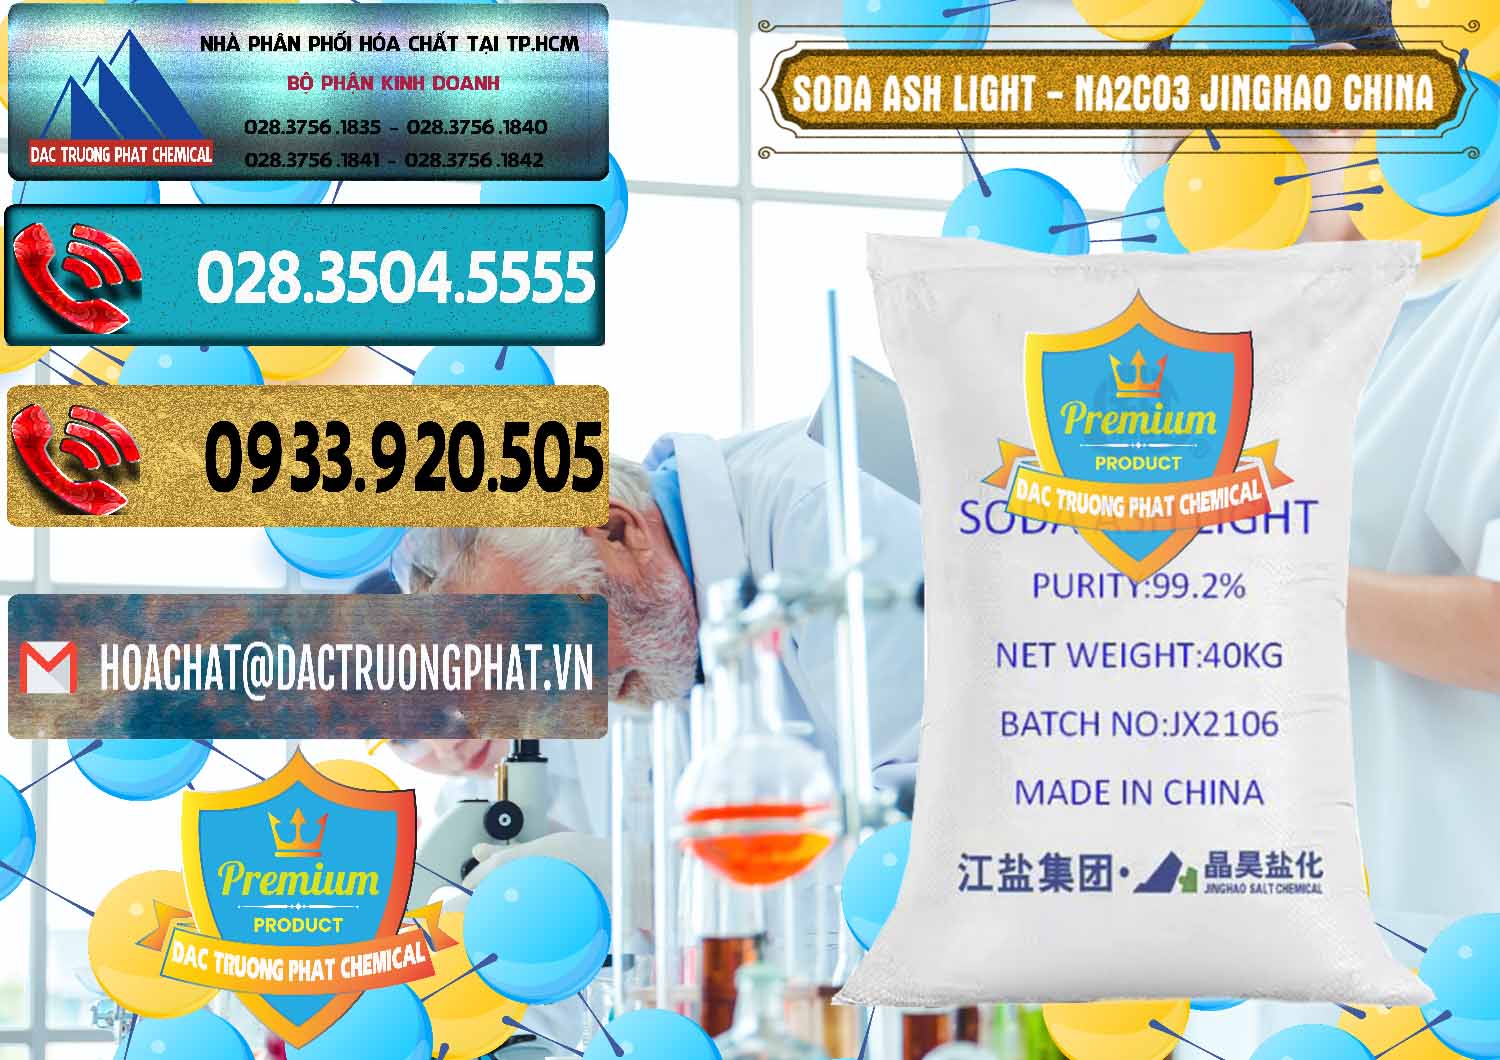 Đơn vị nhập khẩu và bán Soda Ash Light - NA2CO3 Jinghao Trung Quốc China - 0339 - Nơi bán _ phân phối hóa chất tại TP.HCM - hoachatdetnhuom.com